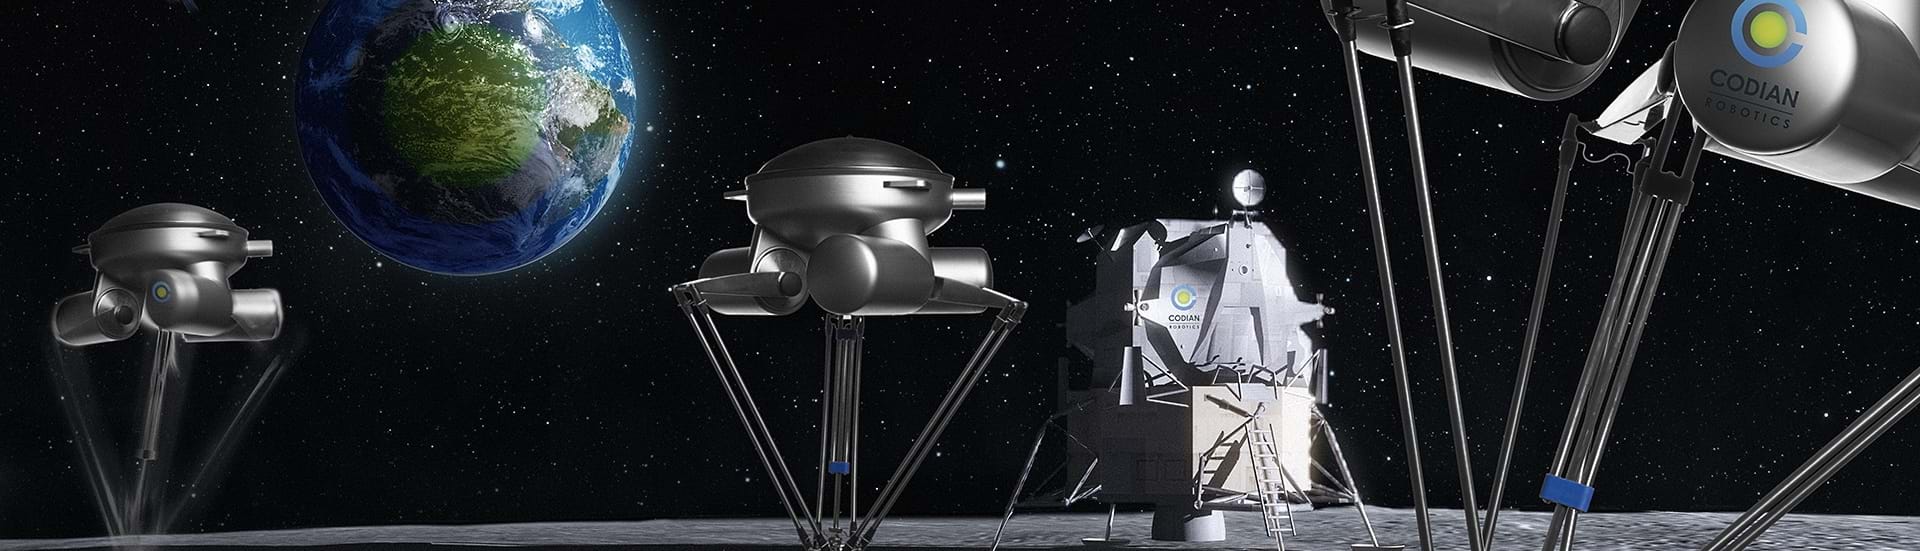 Topbillede viser Delta Robotter med universet som baggrund